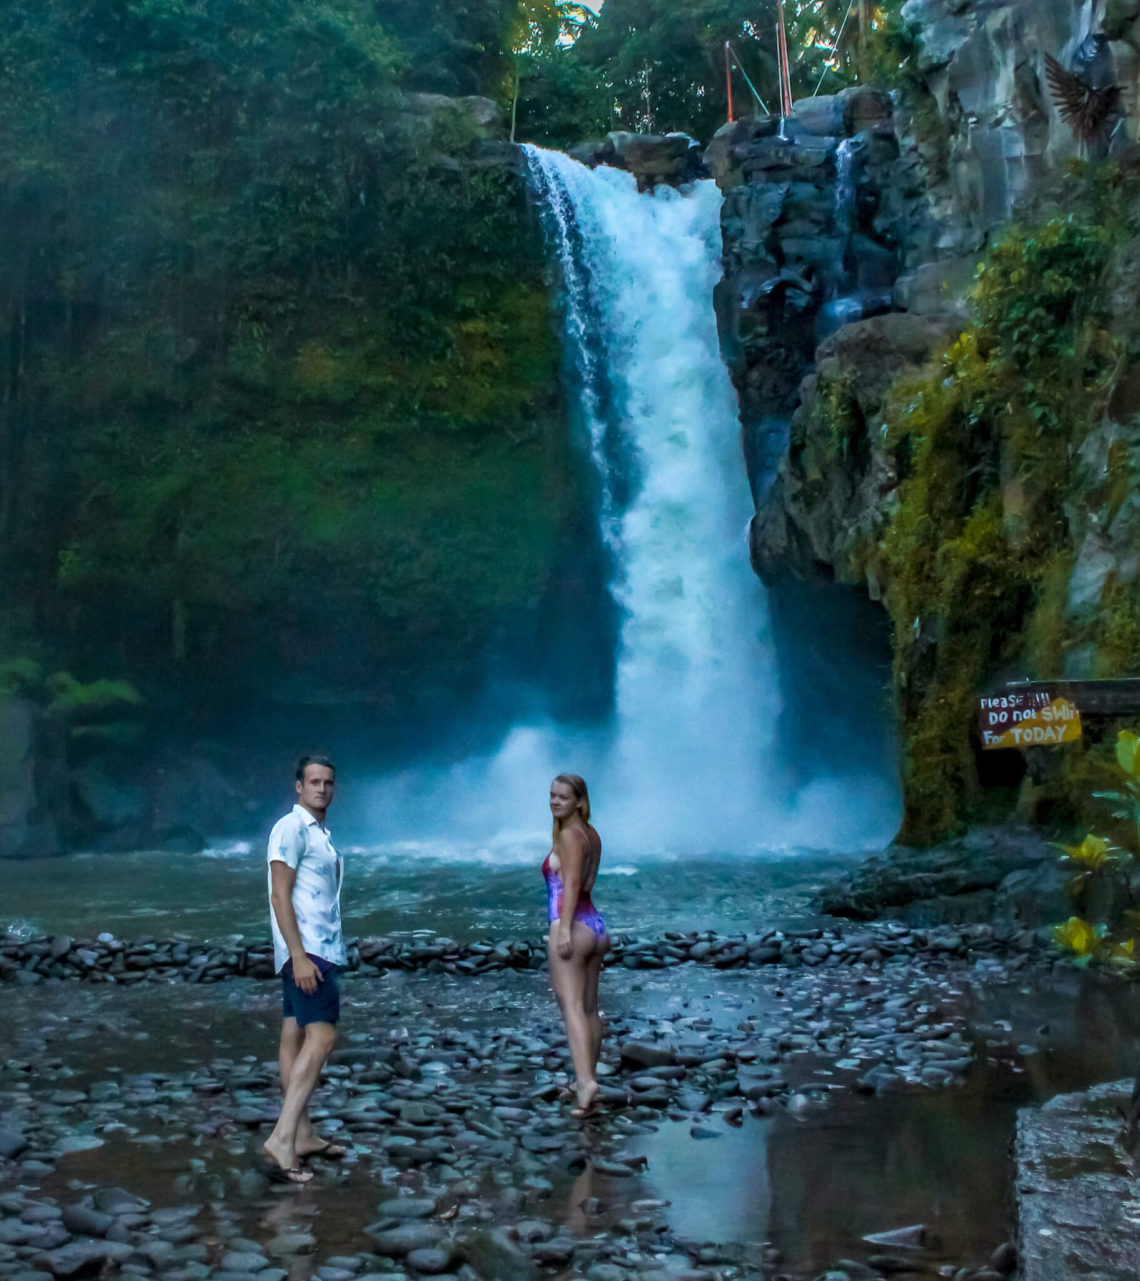 Gemma and Campbell at Tegenungan Waterfall Bali